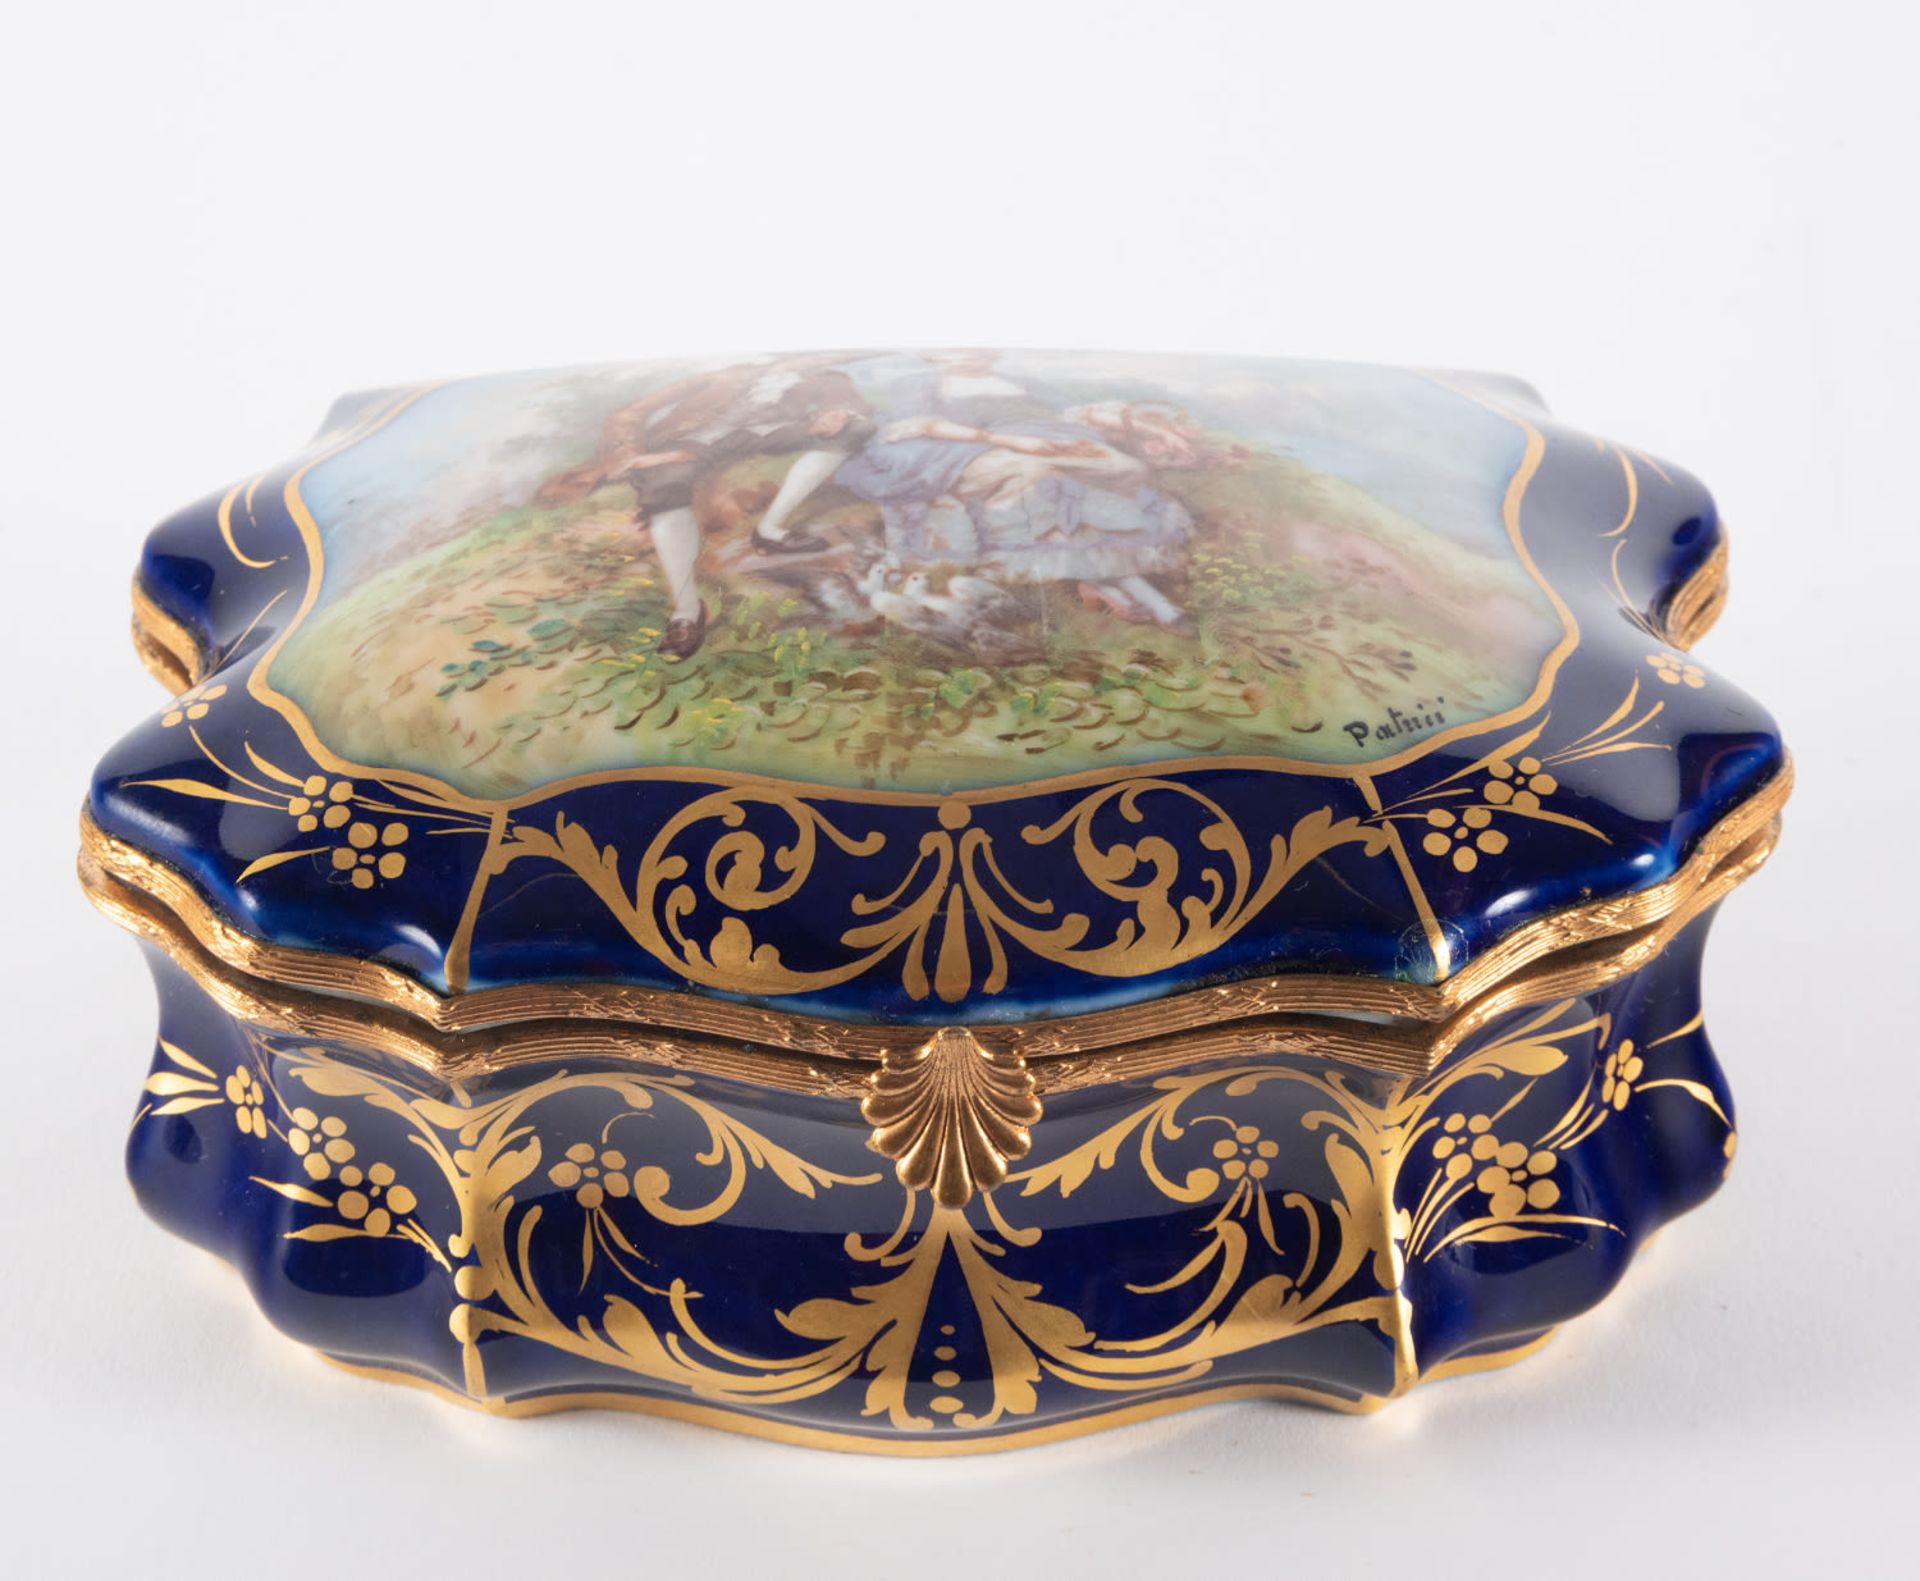 Enamelled Sèvres porcelain jewelry box, 19th century, Chateau de les Etoiles series - Image 2 of 6